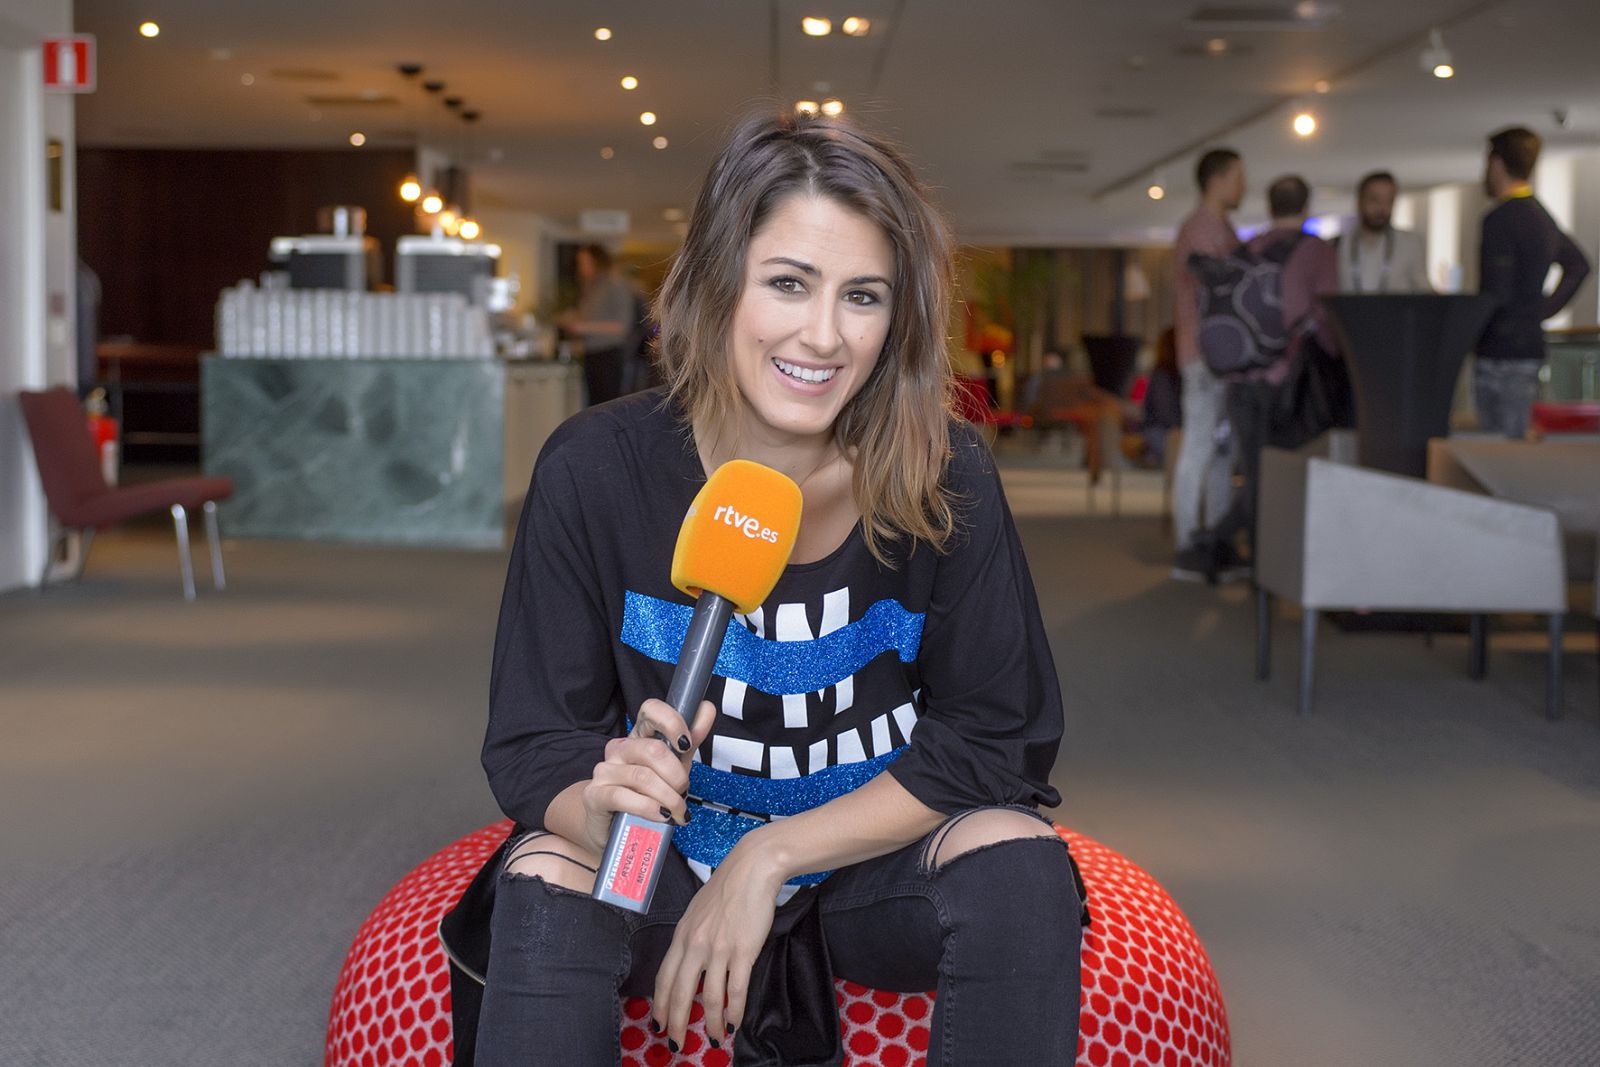 La representante española en Eurovisión, Barei, ha participado en un videoencuentro este jueves organizado por RTVE.es